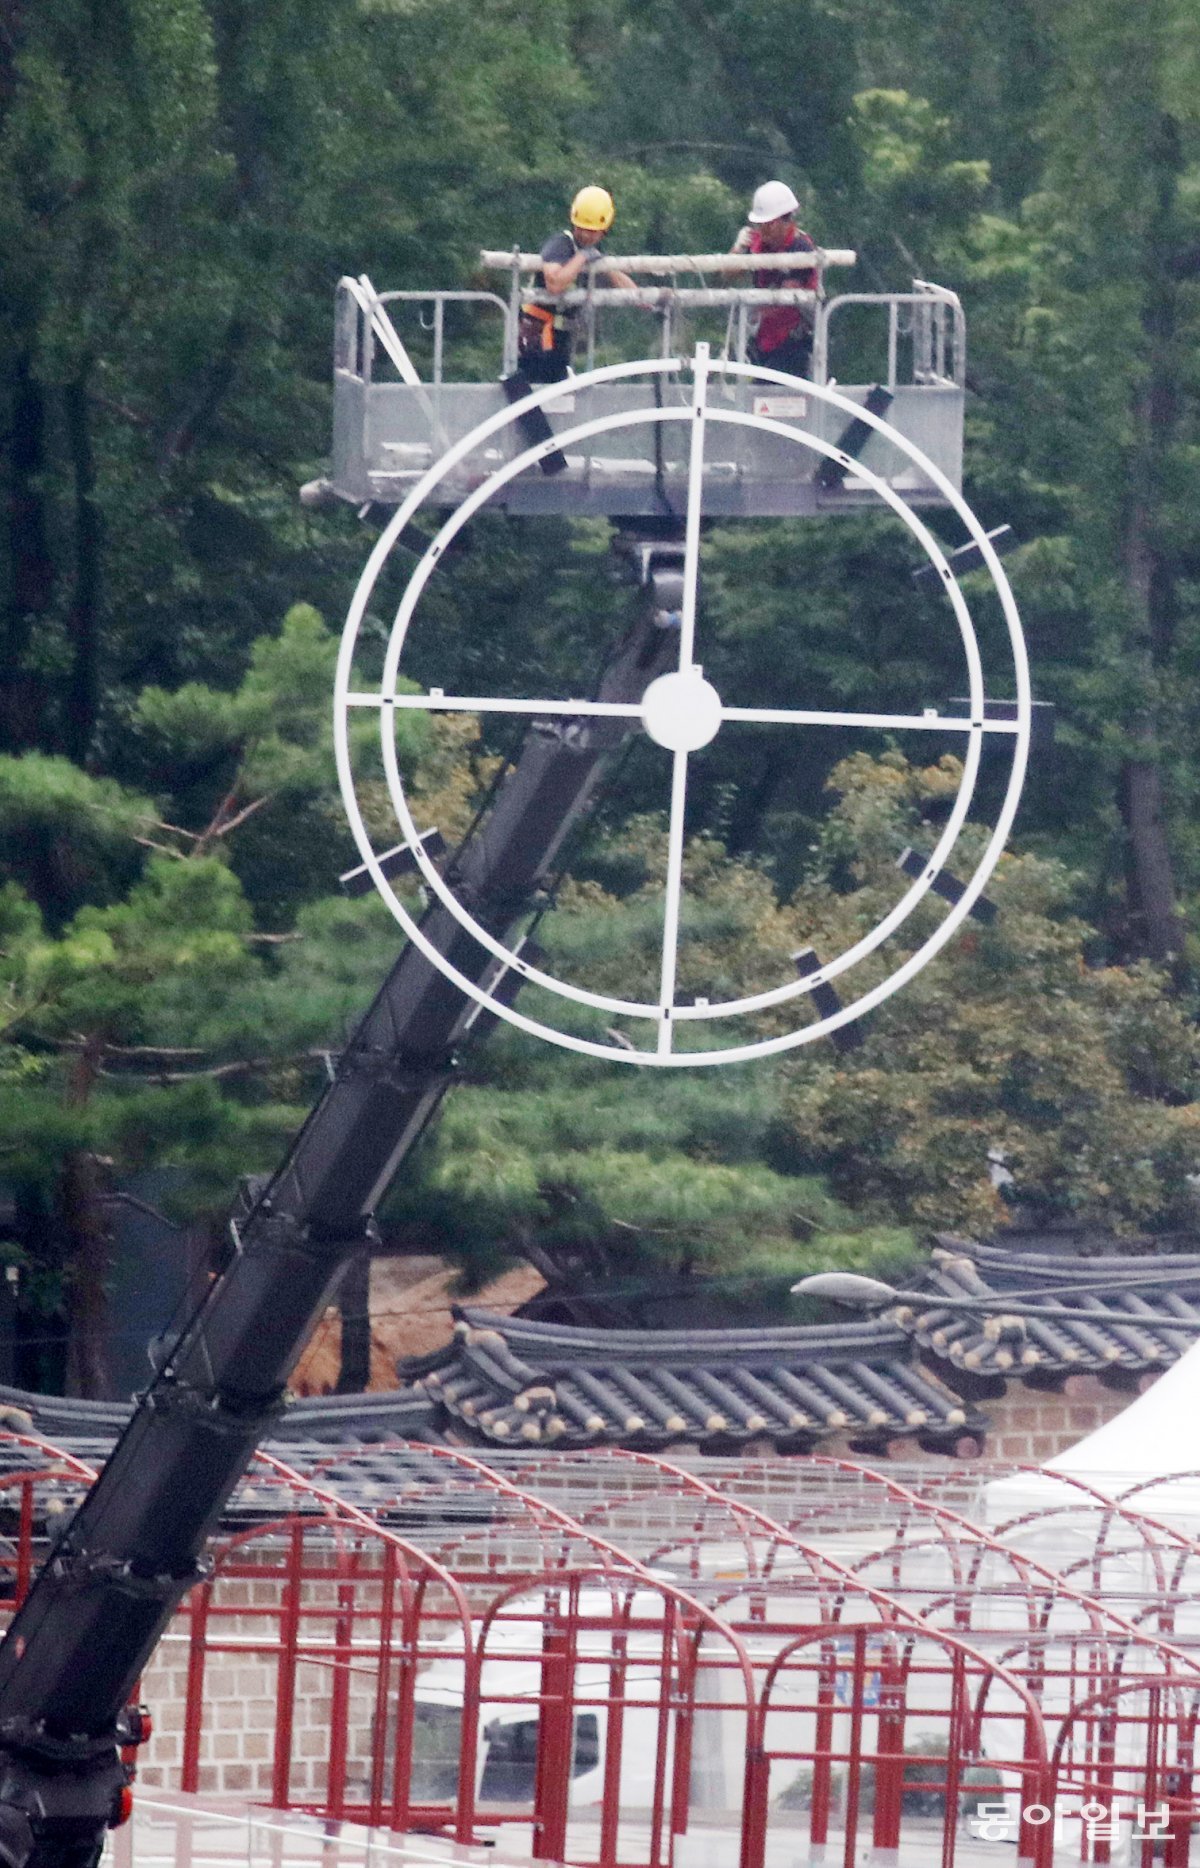 24일 오전 지름 4m 높이의 대형 시계가 크레인에 의해 옮겨지고 있다. 전영한 기자 scoopjyh@donga.com